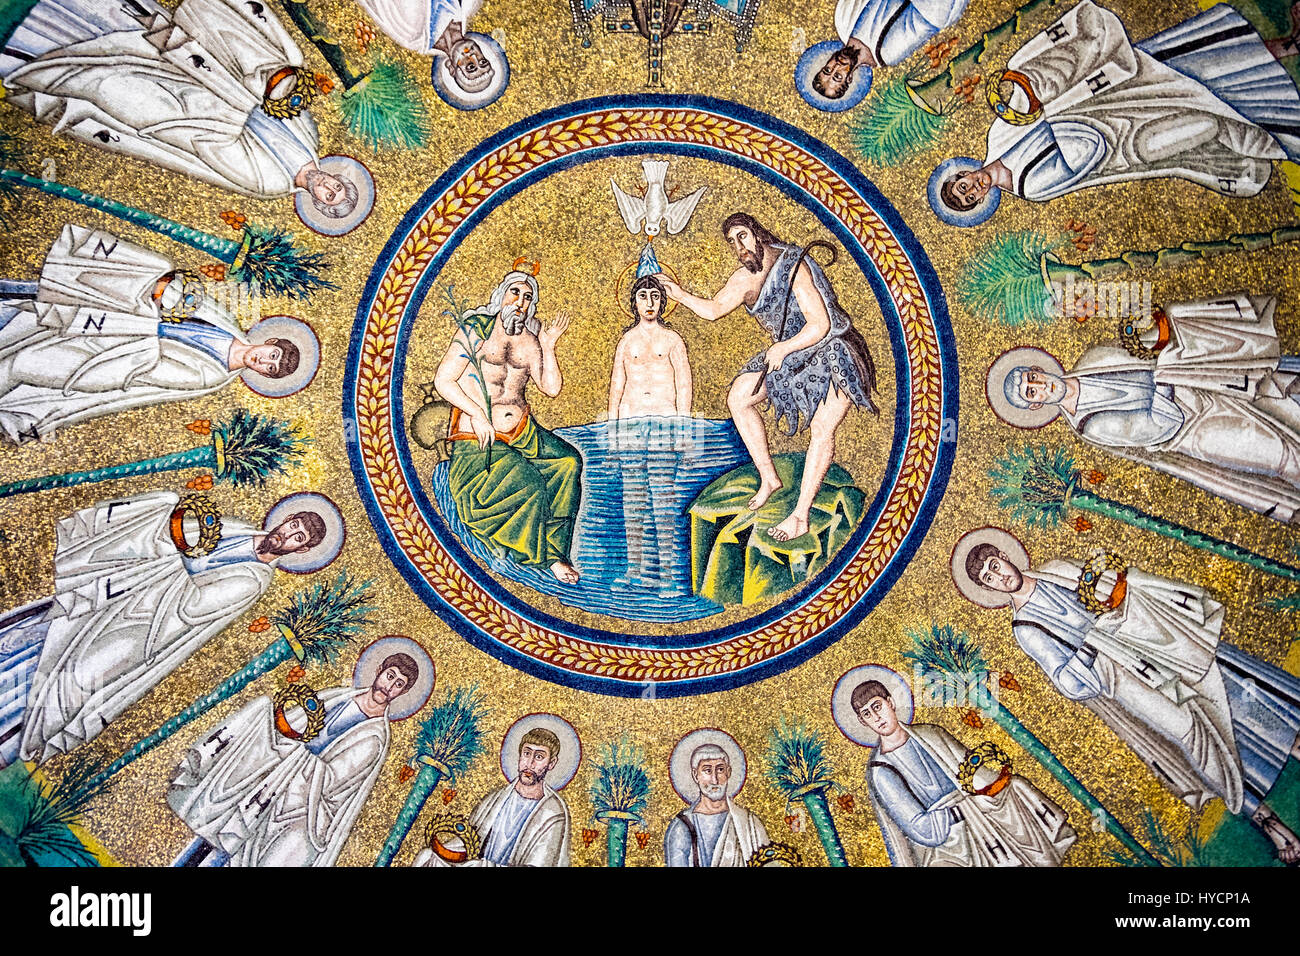 Détail de la mosaïque du baptême de Jésus par Saint Jean Baptiste dans le Baptistère des Ariens de Ravenna, Italie Banque D'Images